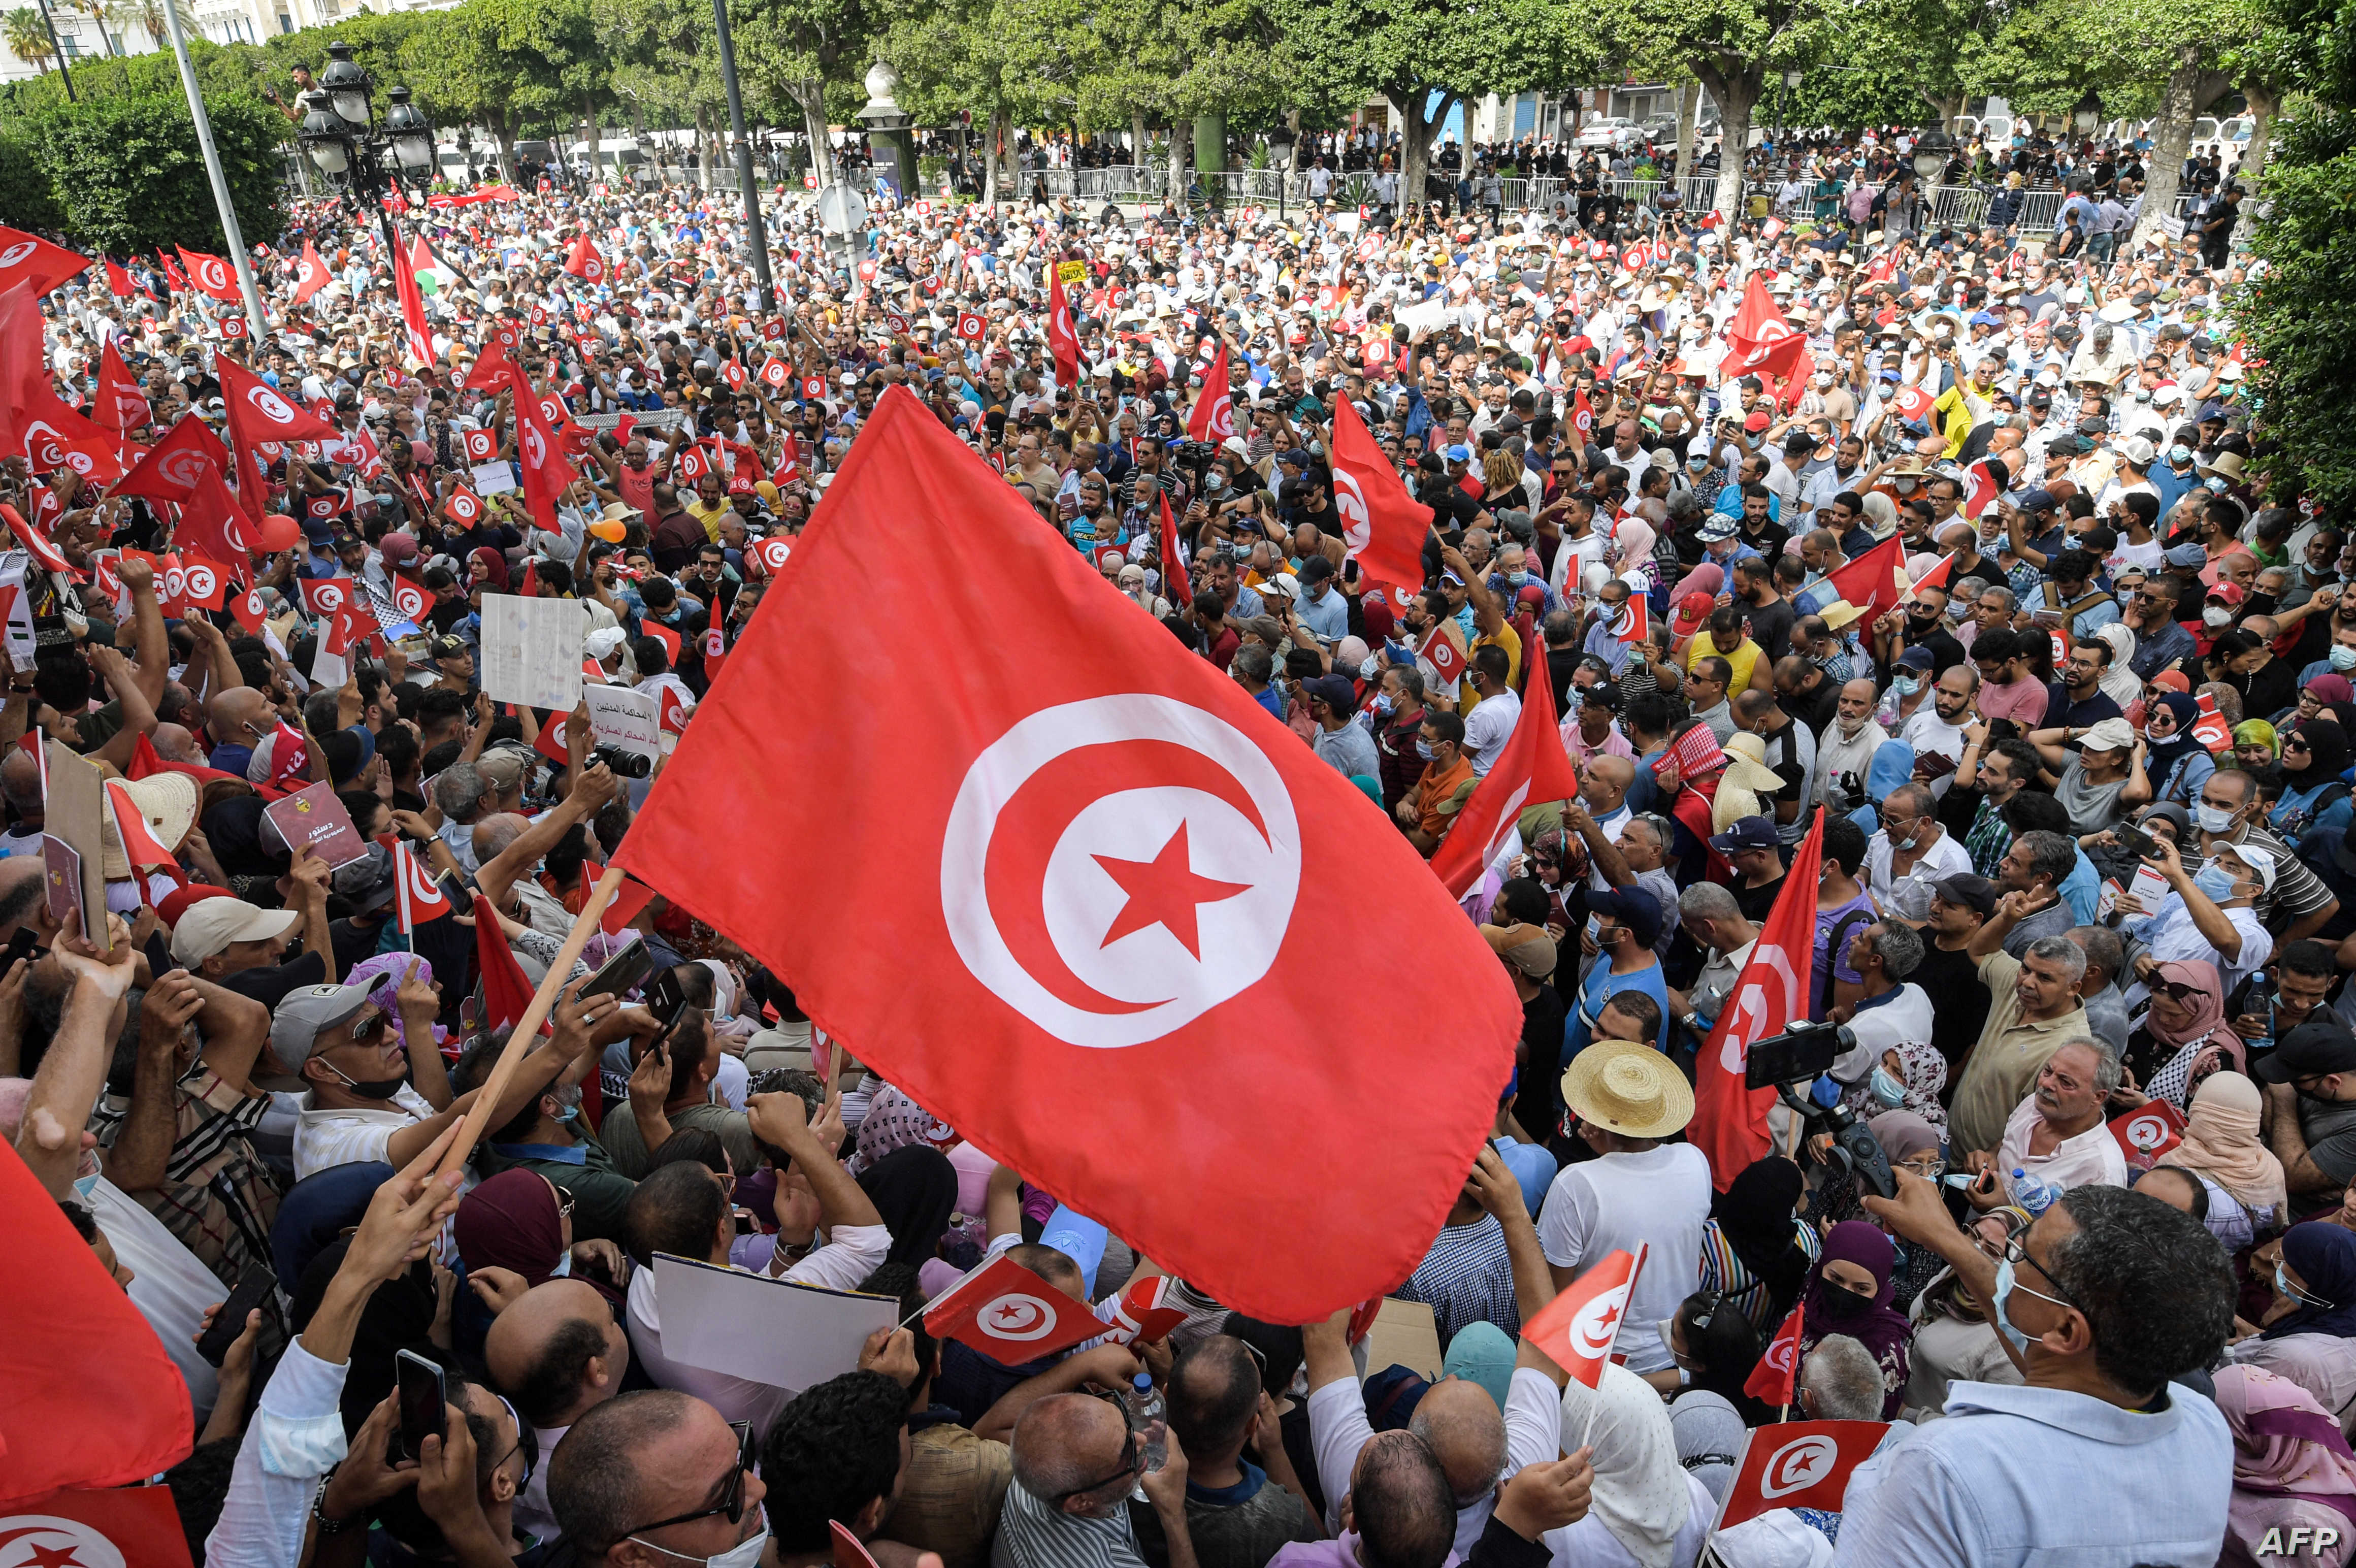 المعارضة في تونس تسعى لتعيين حكومة انقاذ